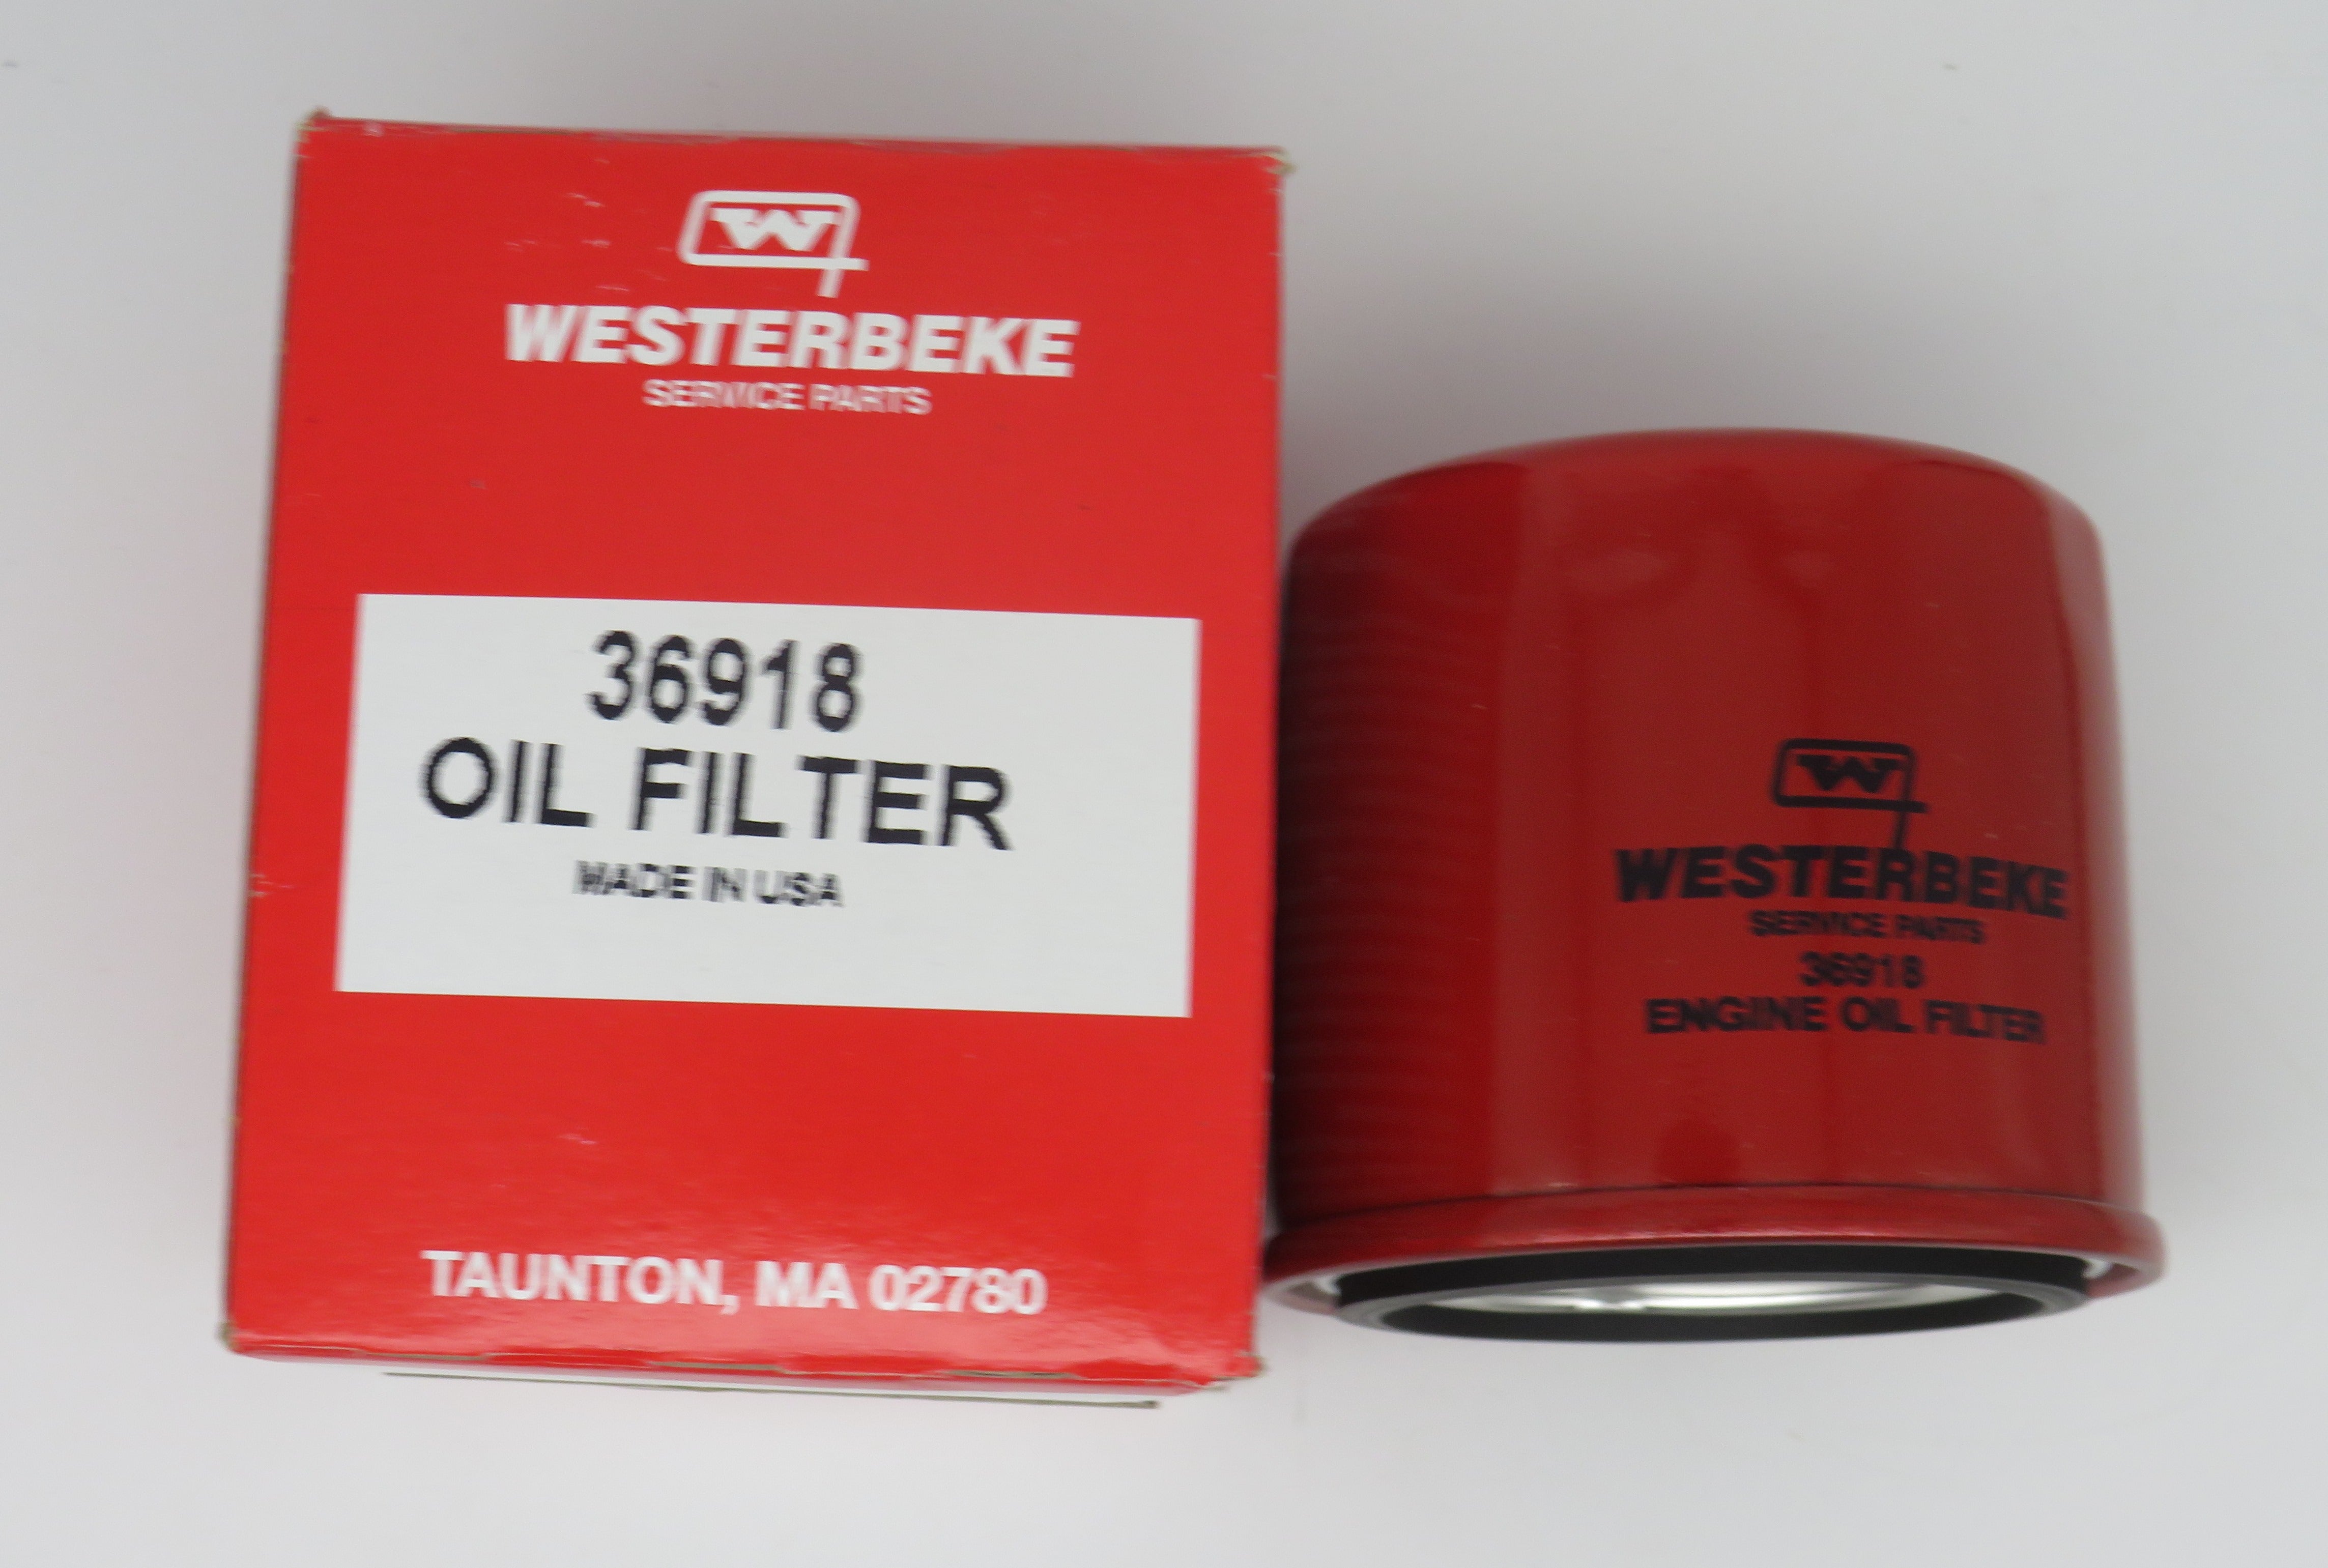 36918 Westerbeke Oil Filter Replaced by Sierra 23-7800